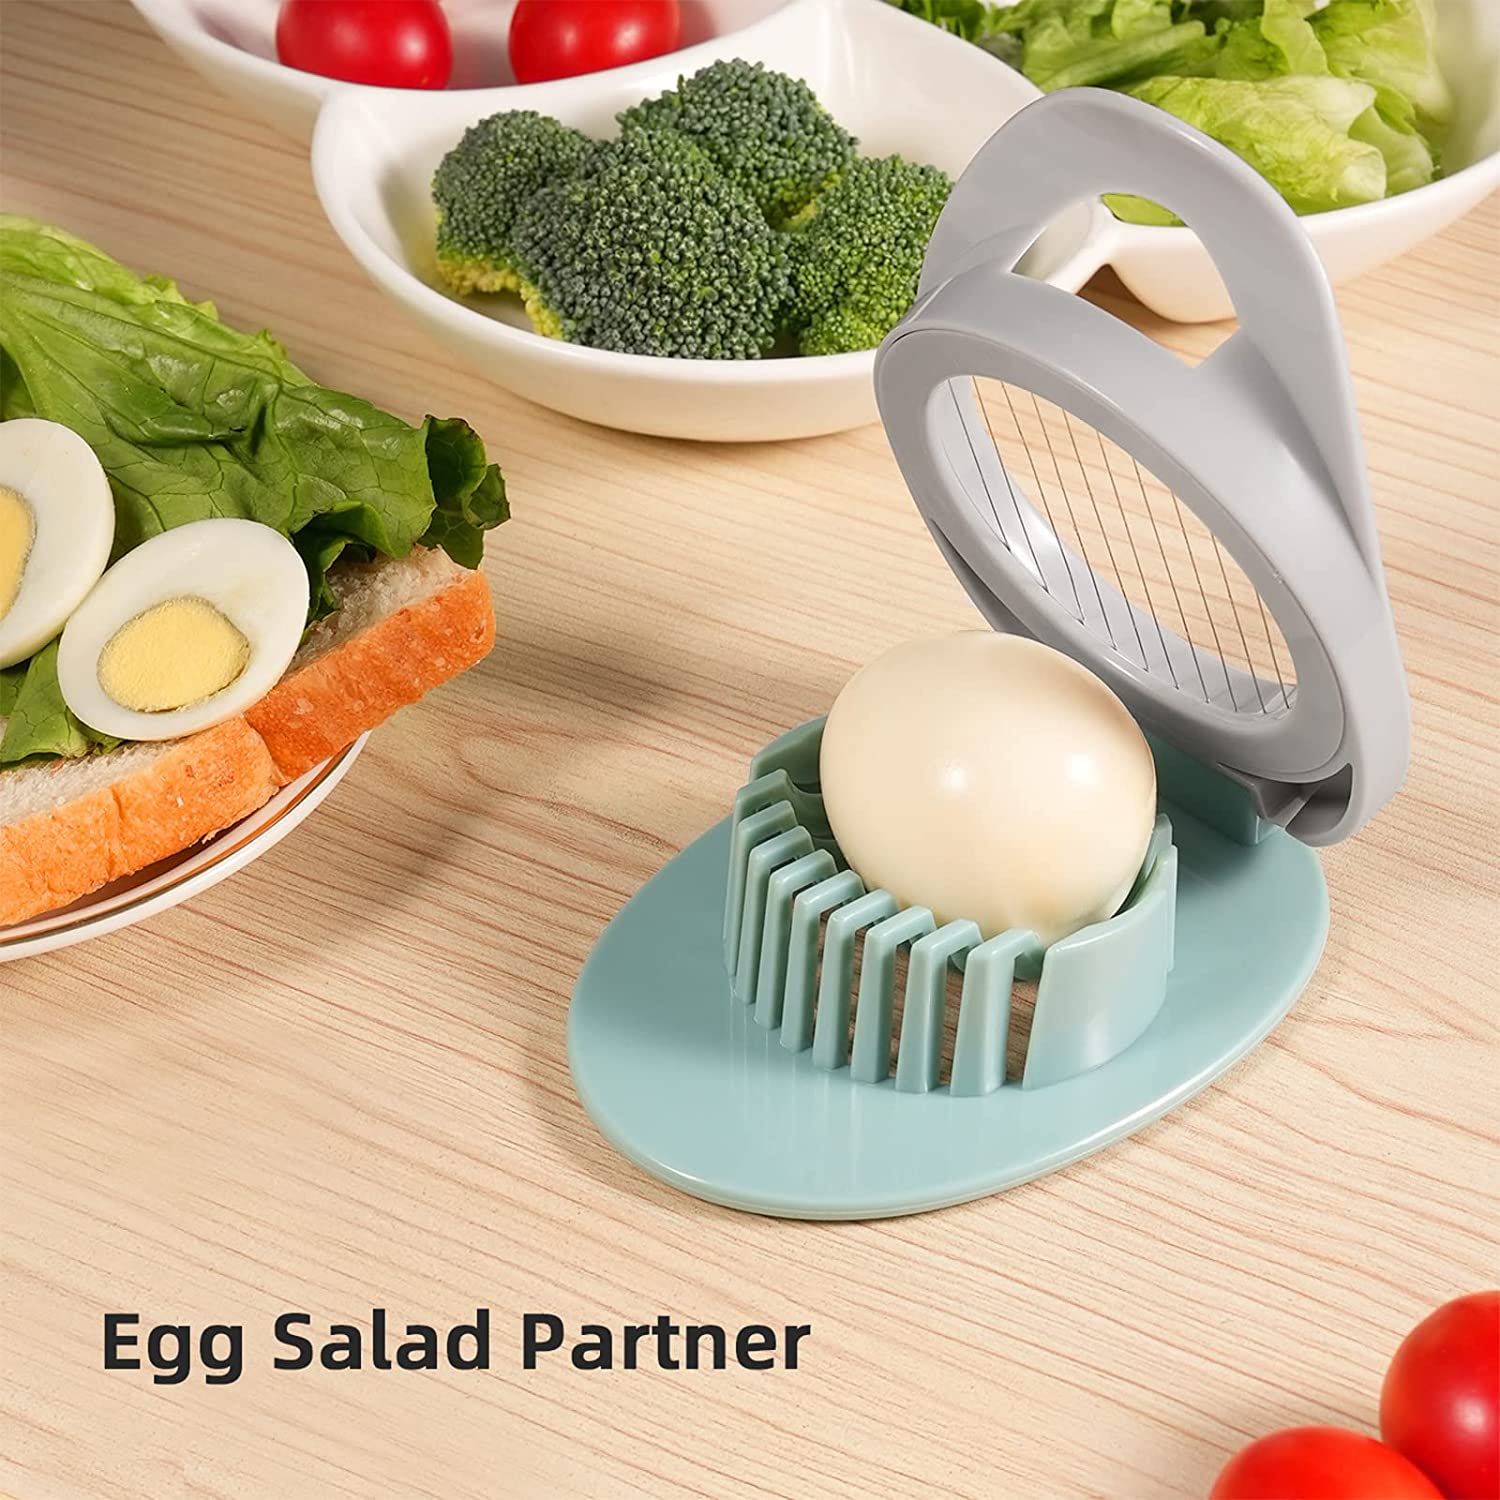 Egg Slicer for Hard Boiled Eggs, Egg Cutter with Stainless Steel